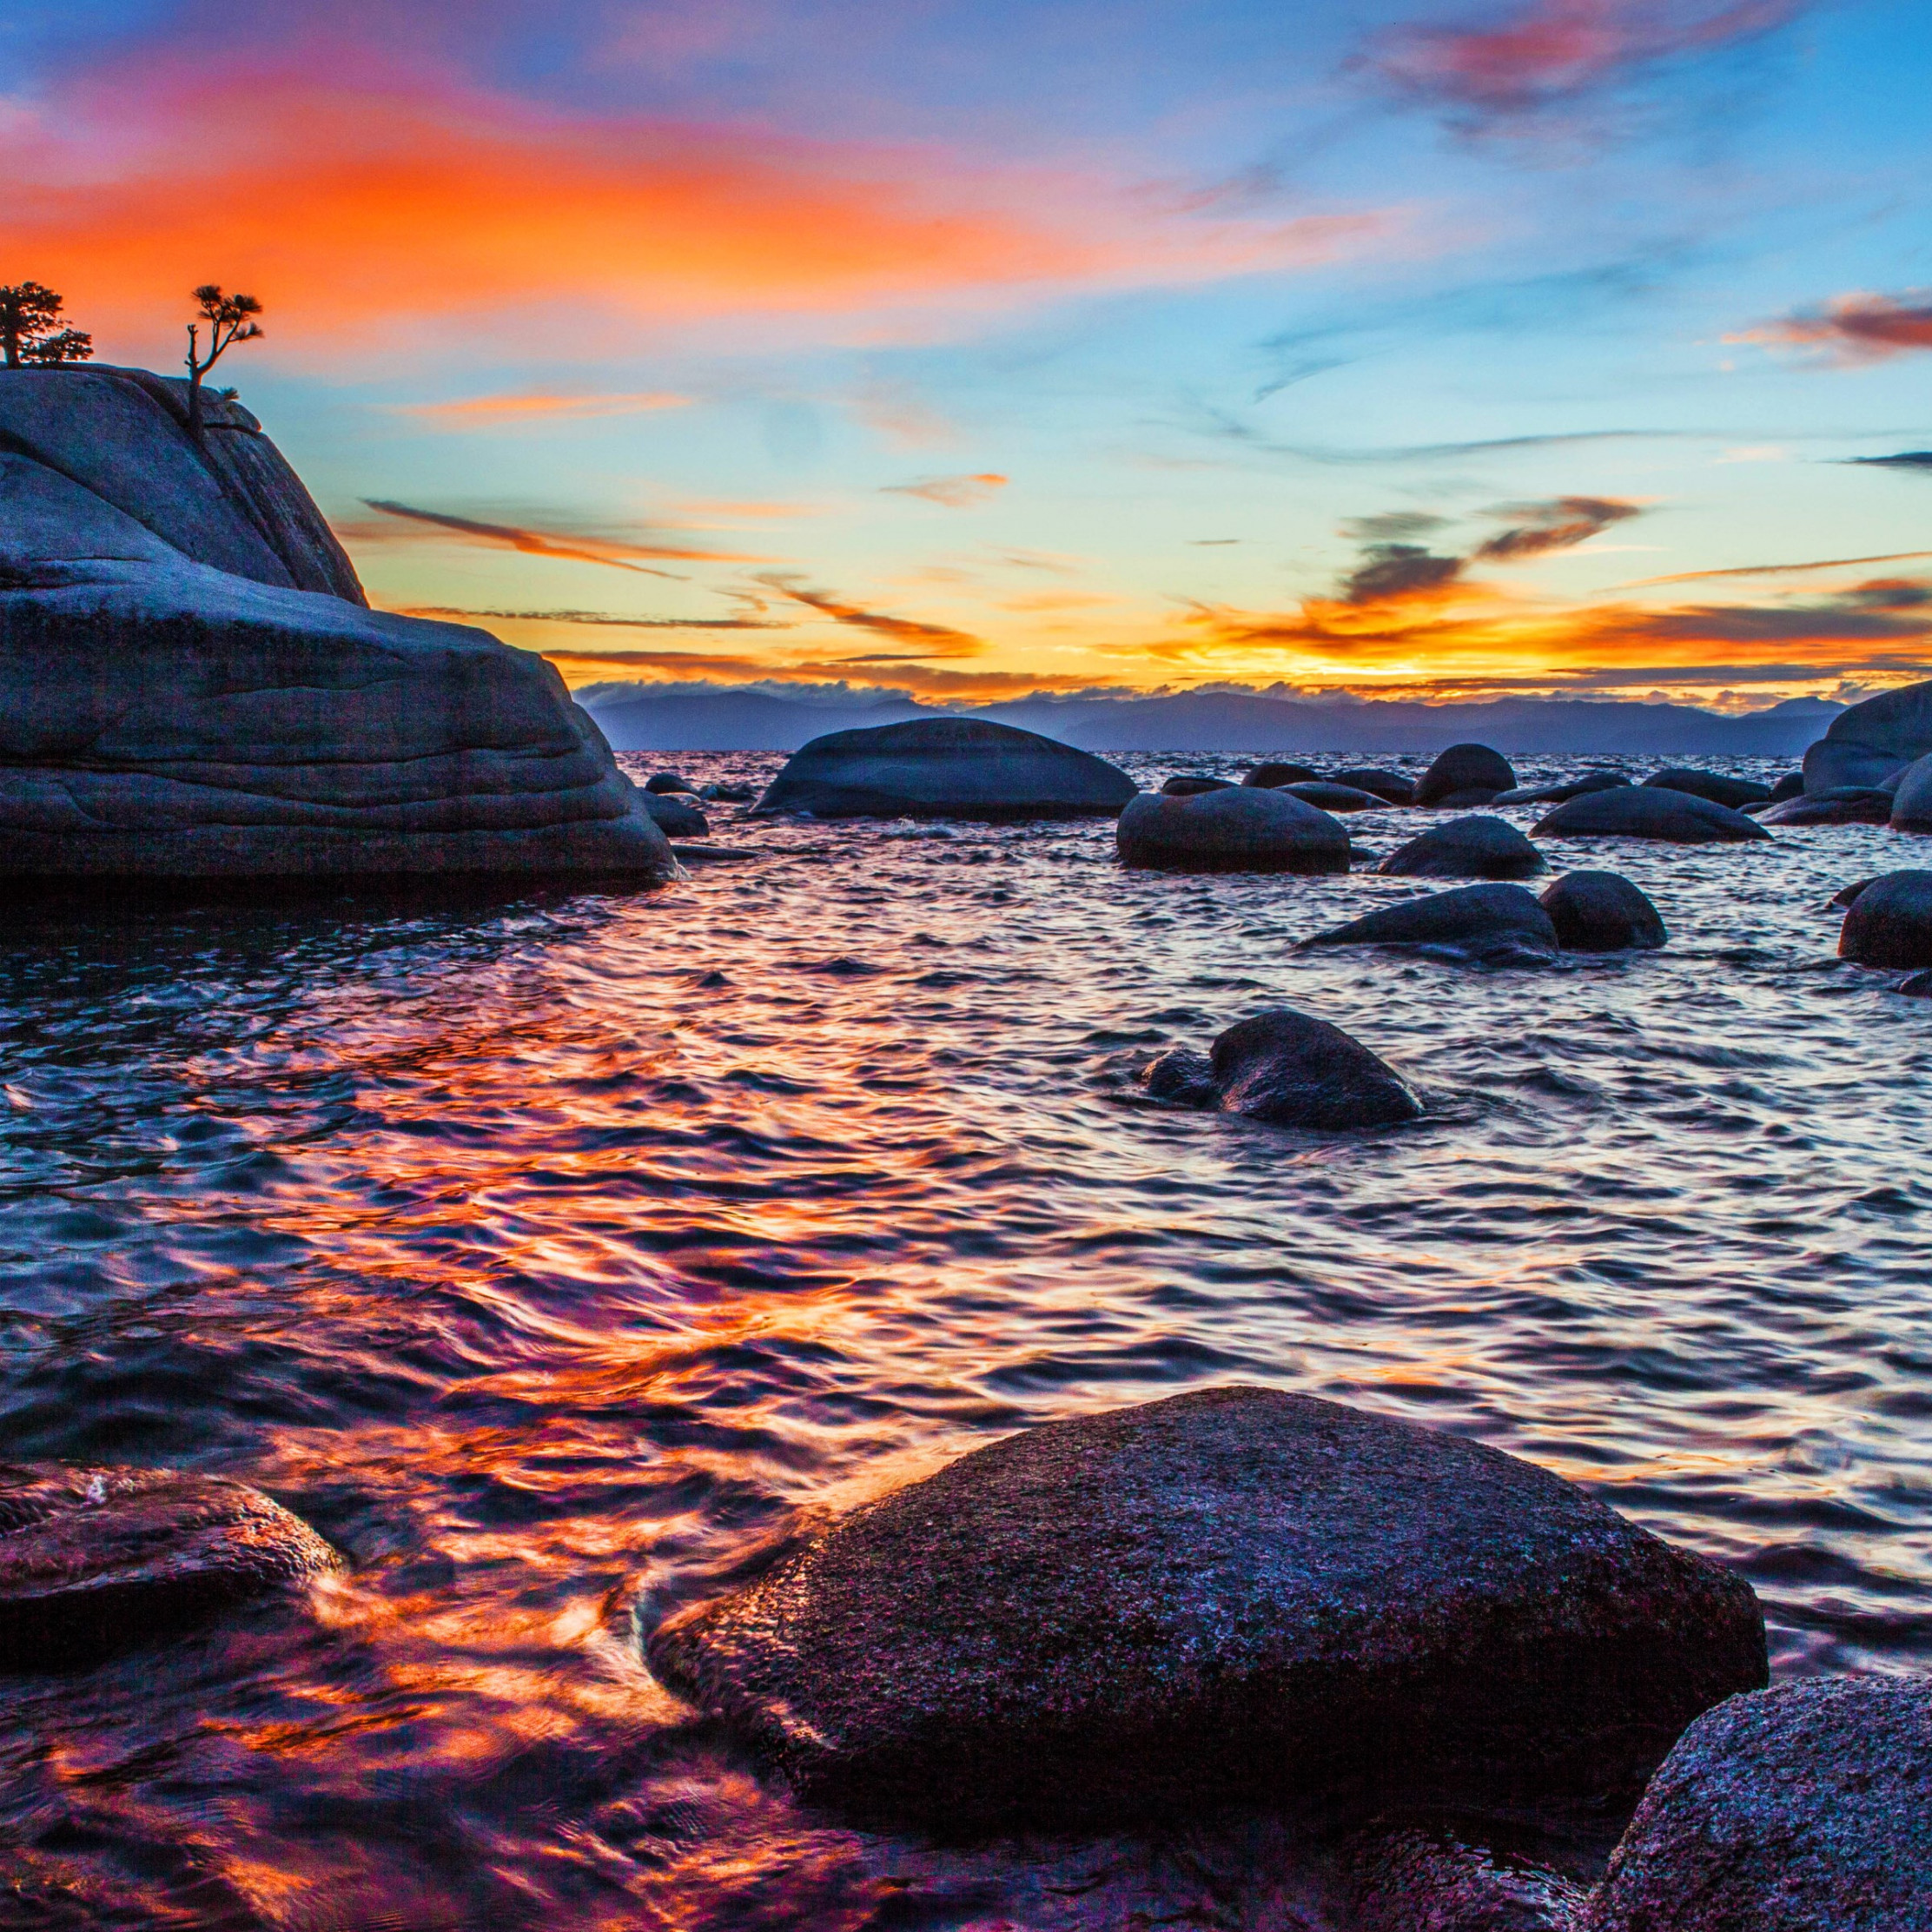 Bonsai Rock sunset at Lake Tahoe wallpaper 2224x2224